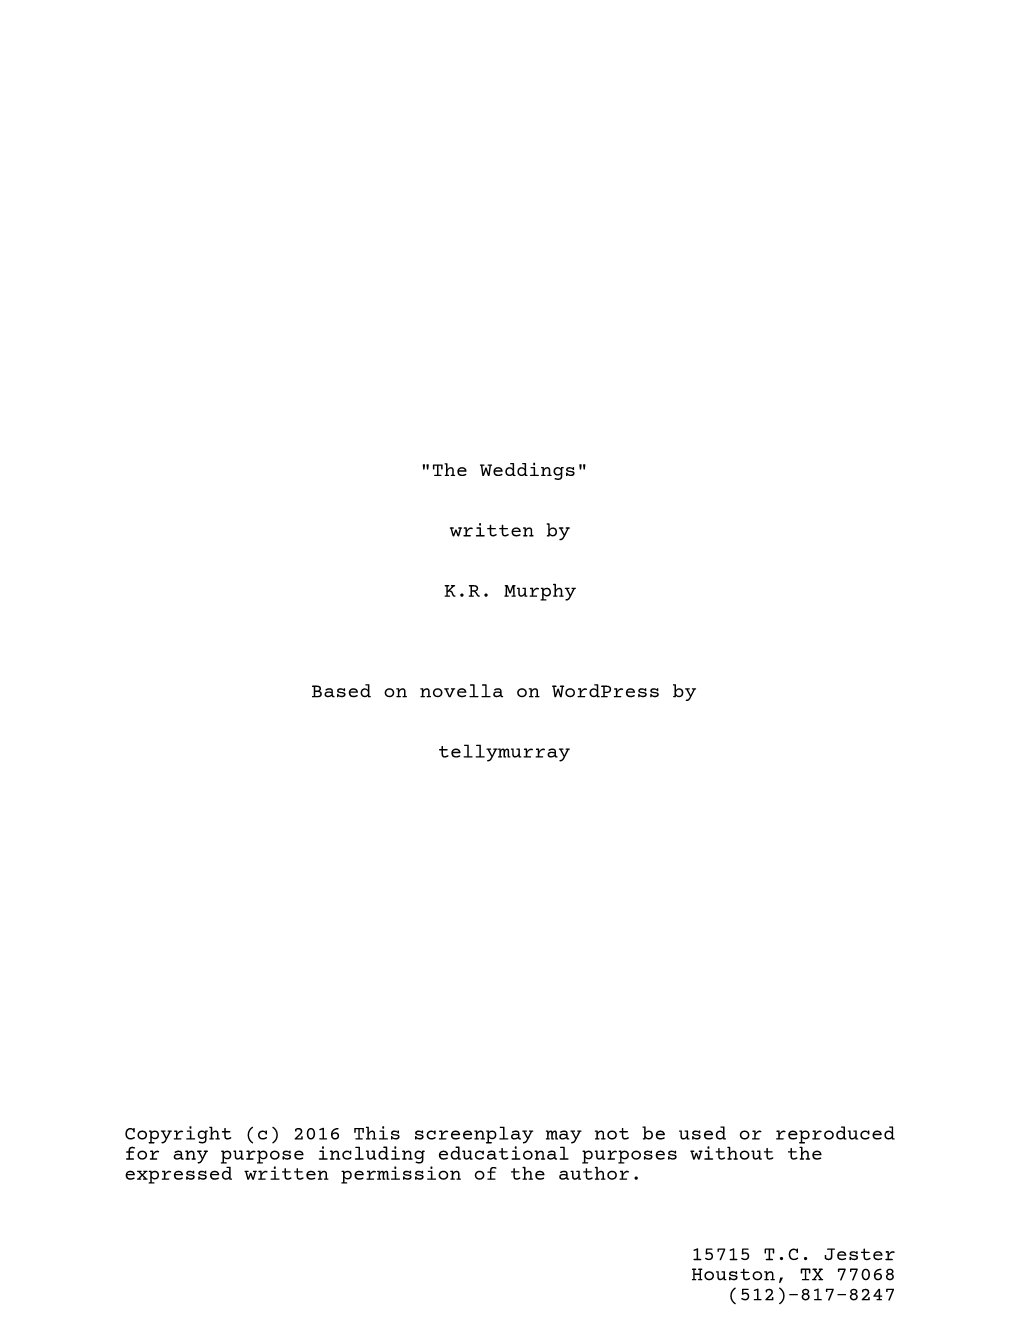 "The Weddings" Written by K.R. Murphy Based on Novella On